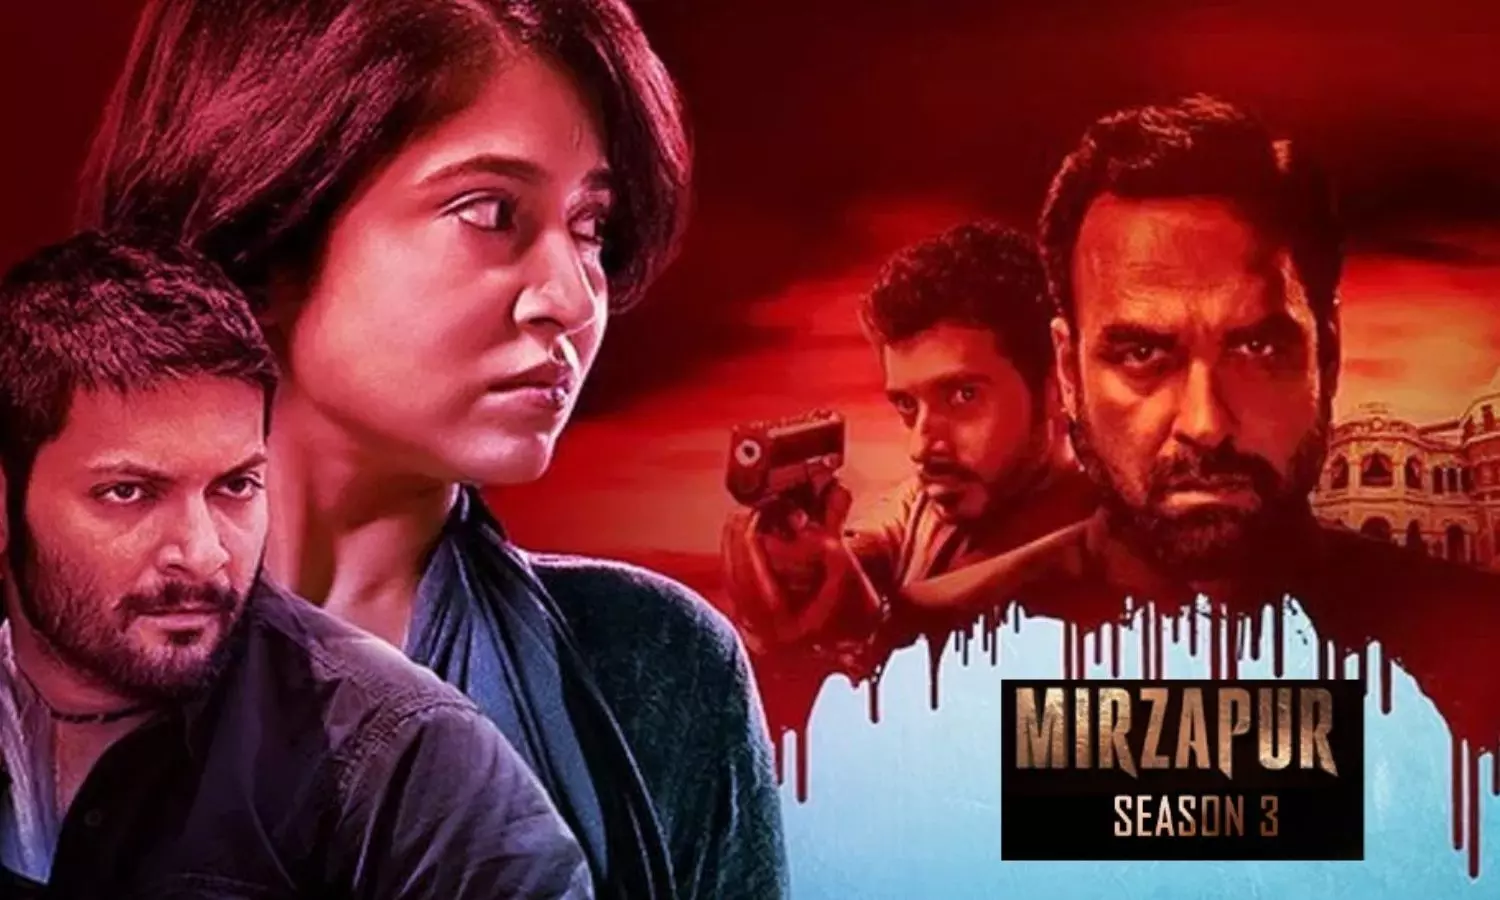 अब खत्म हो जाएगी 'मिर्जापुर' की कहानी, हुए चौंकाने वाले खुलासे 

Now the story of 'Mirzapur' will end, shocking revelations made